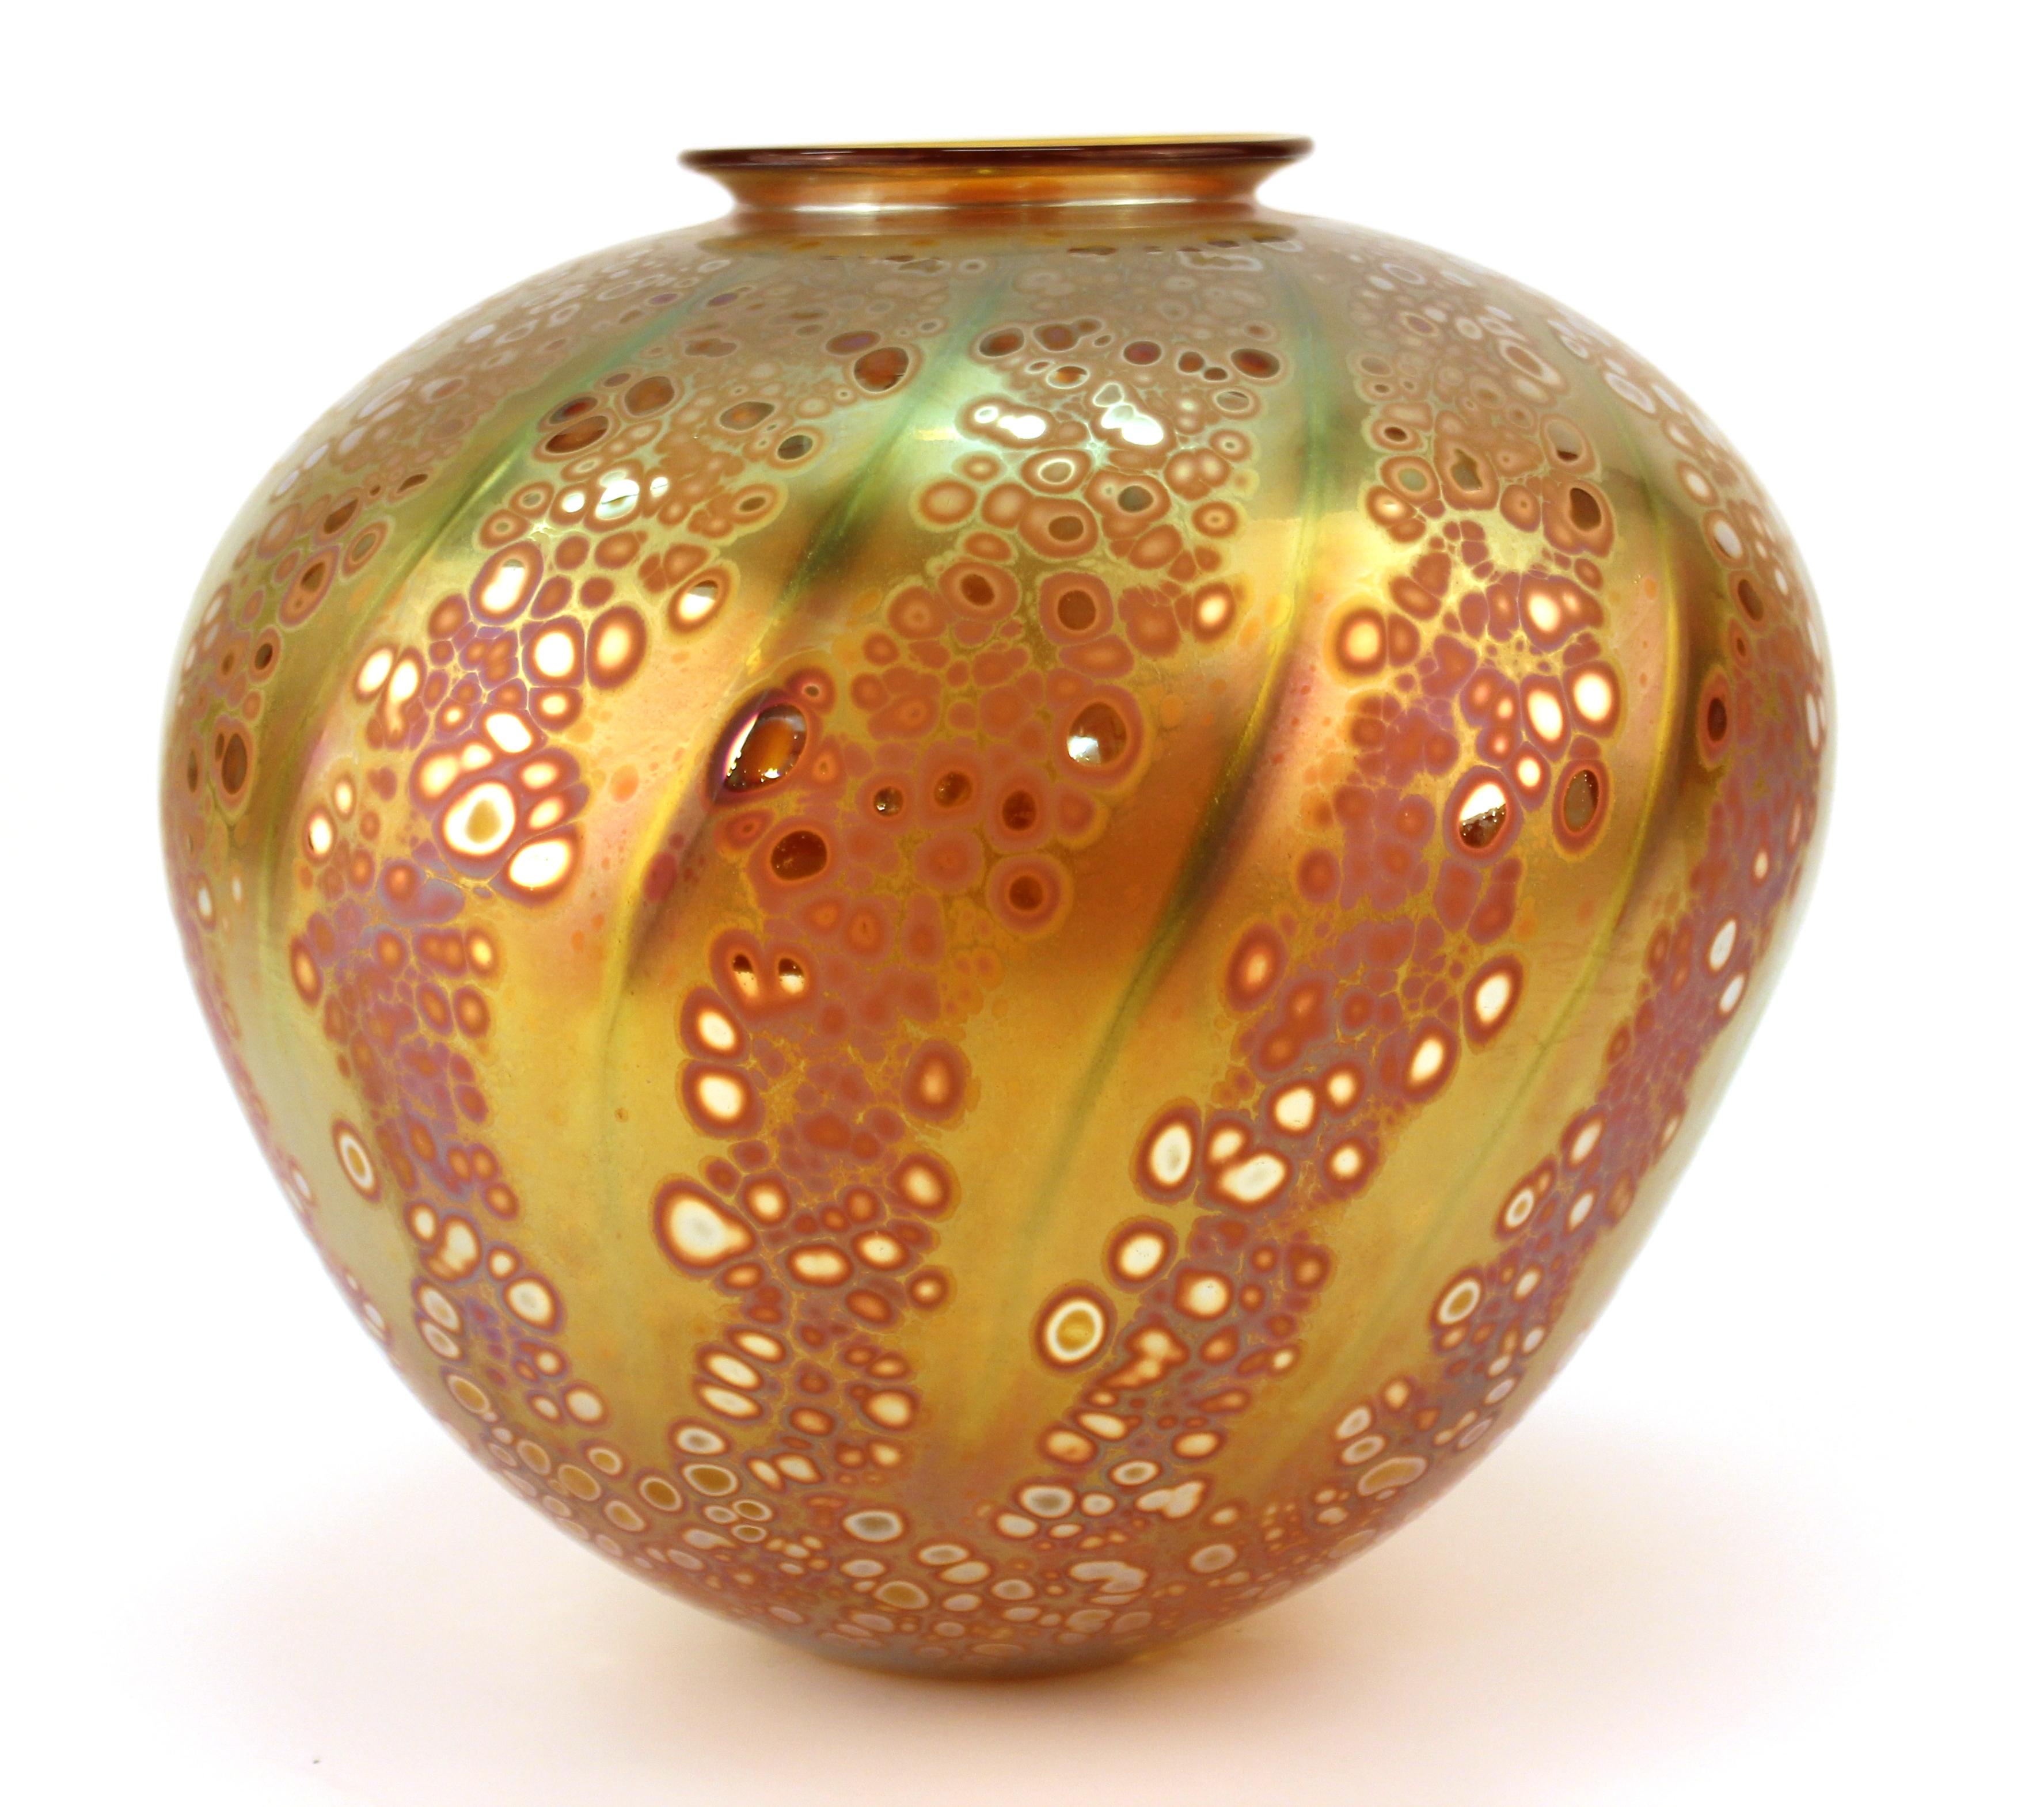 Postmoderne Vase aus Studioglas mit Signatur und Datum auf dem Boden. Das Stück hat schillernde Elemente:: die ihm einen ganz besonderen Glanz verleihen. Die Vase stammt aus dem Jahr 1993 und befindet sich in einem hervorragenden Zustand.